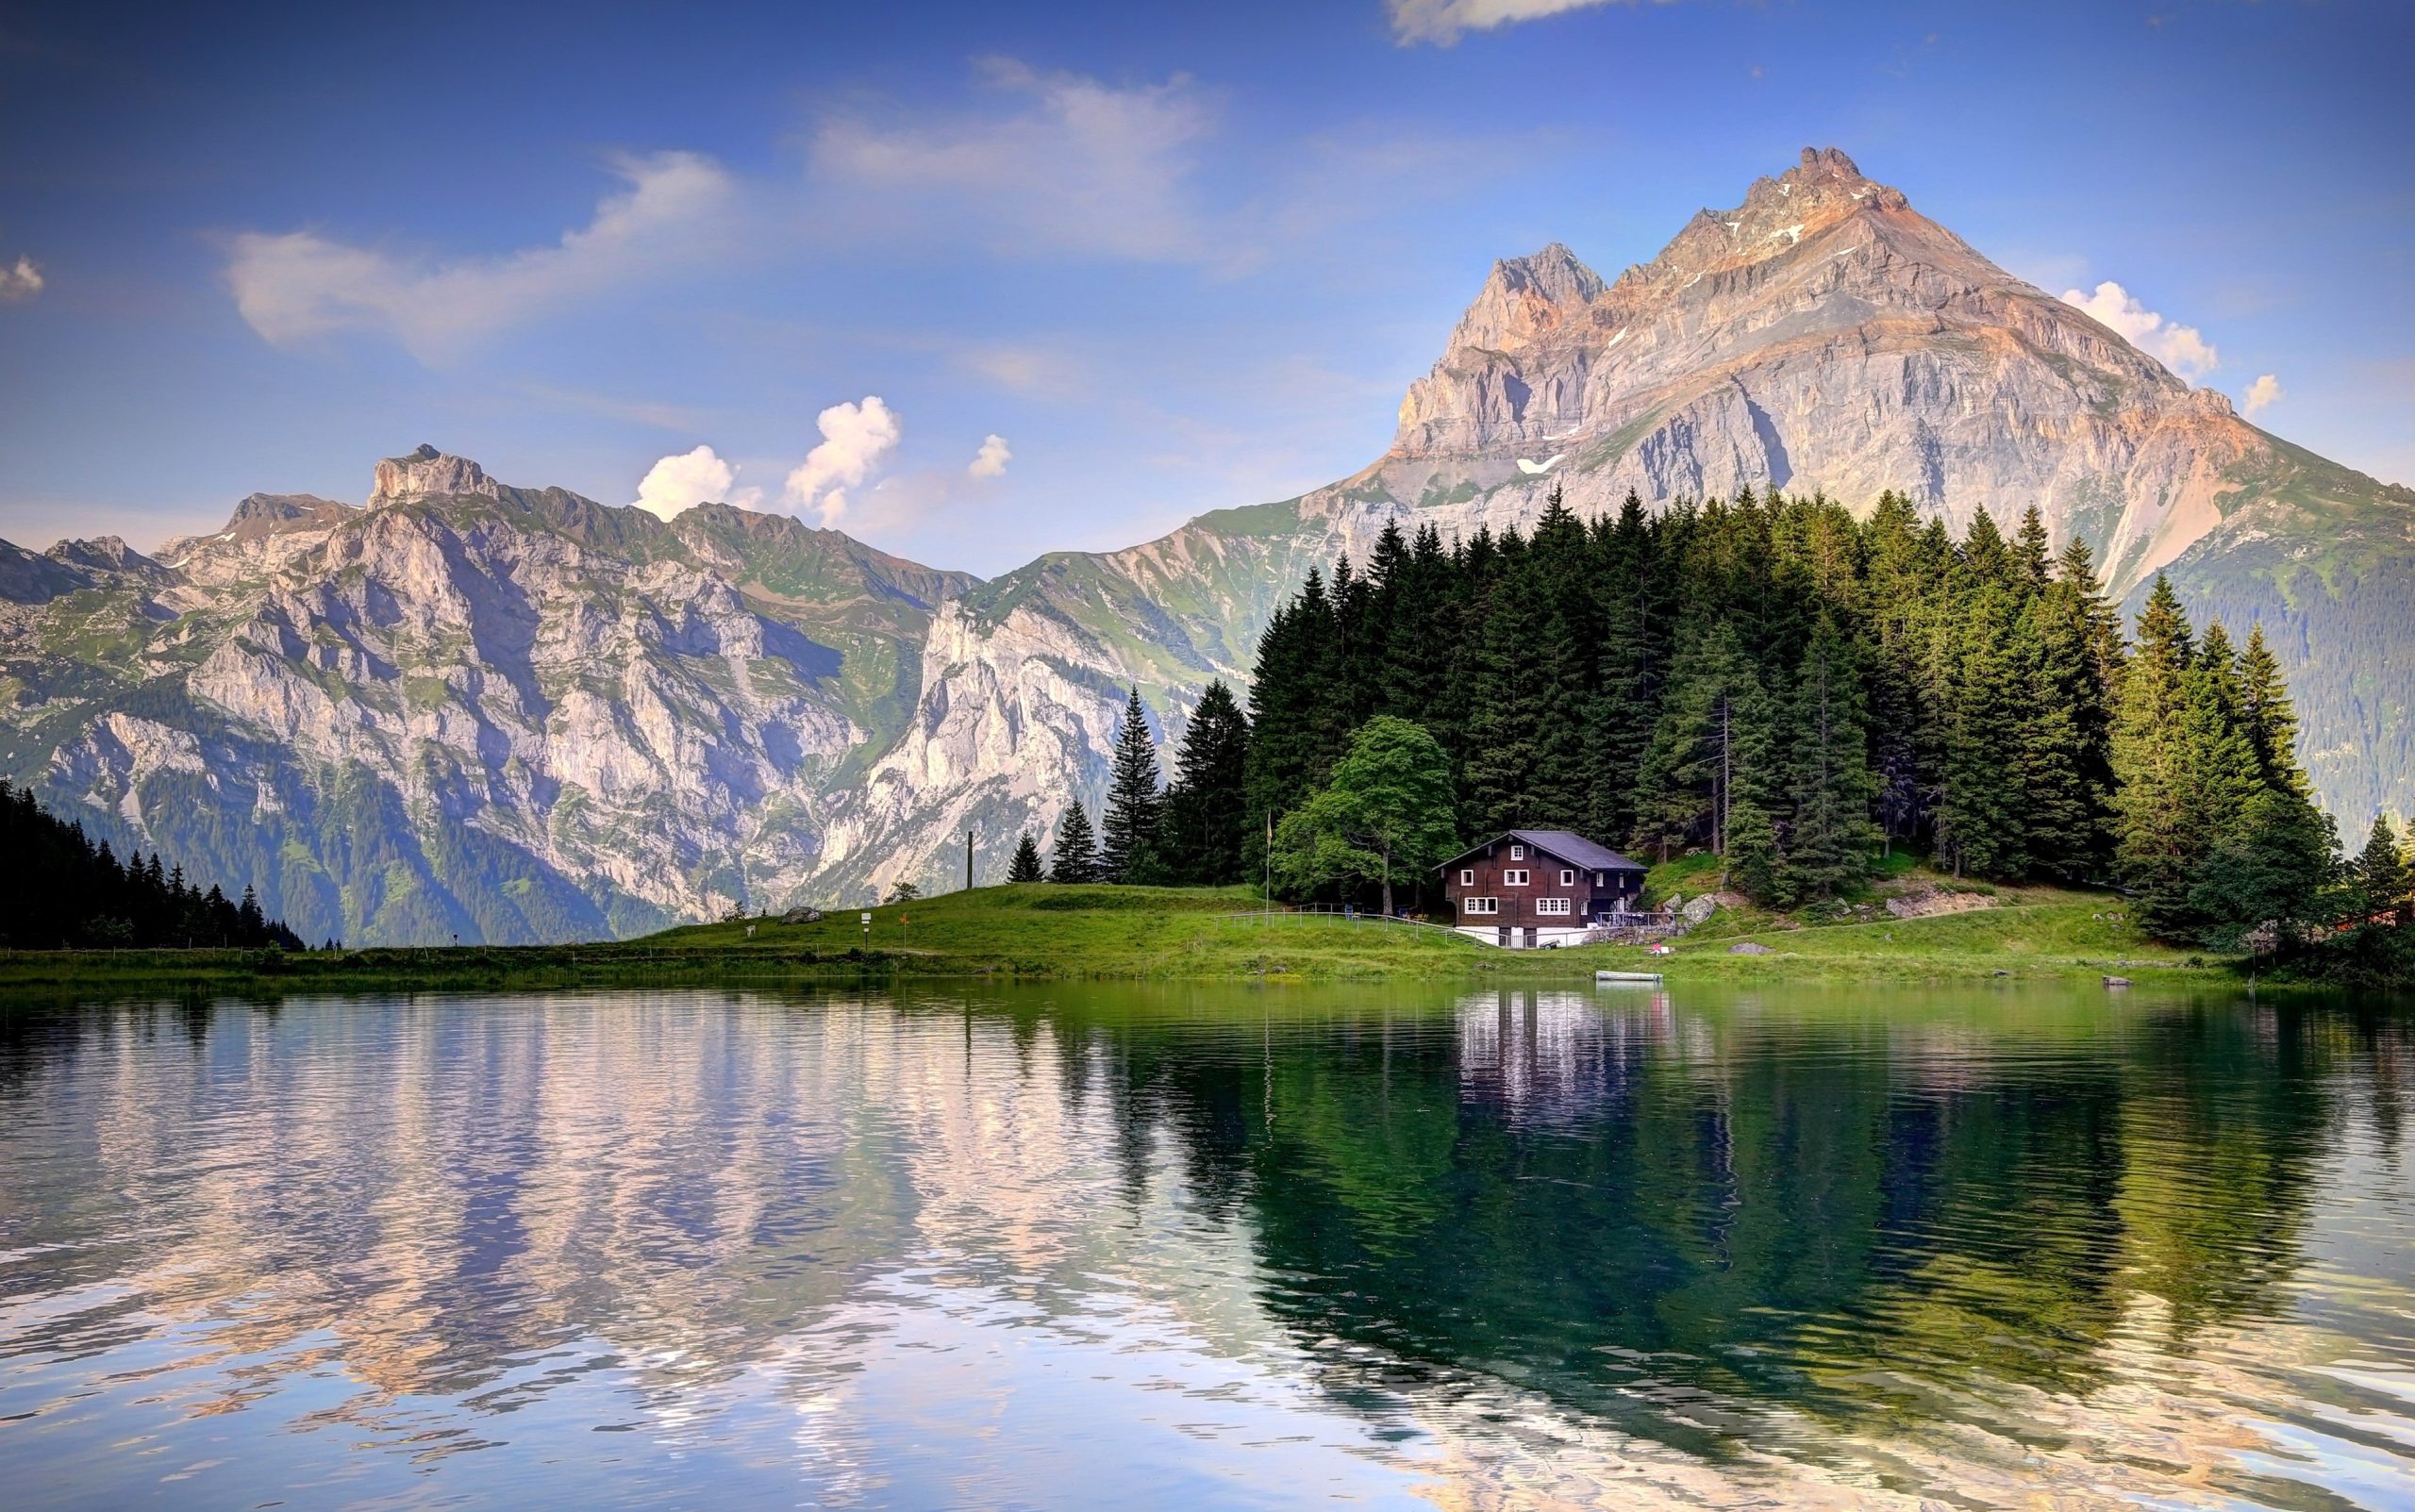 سفر به سوئیس - عکس طبیعت زیبای سوئیس